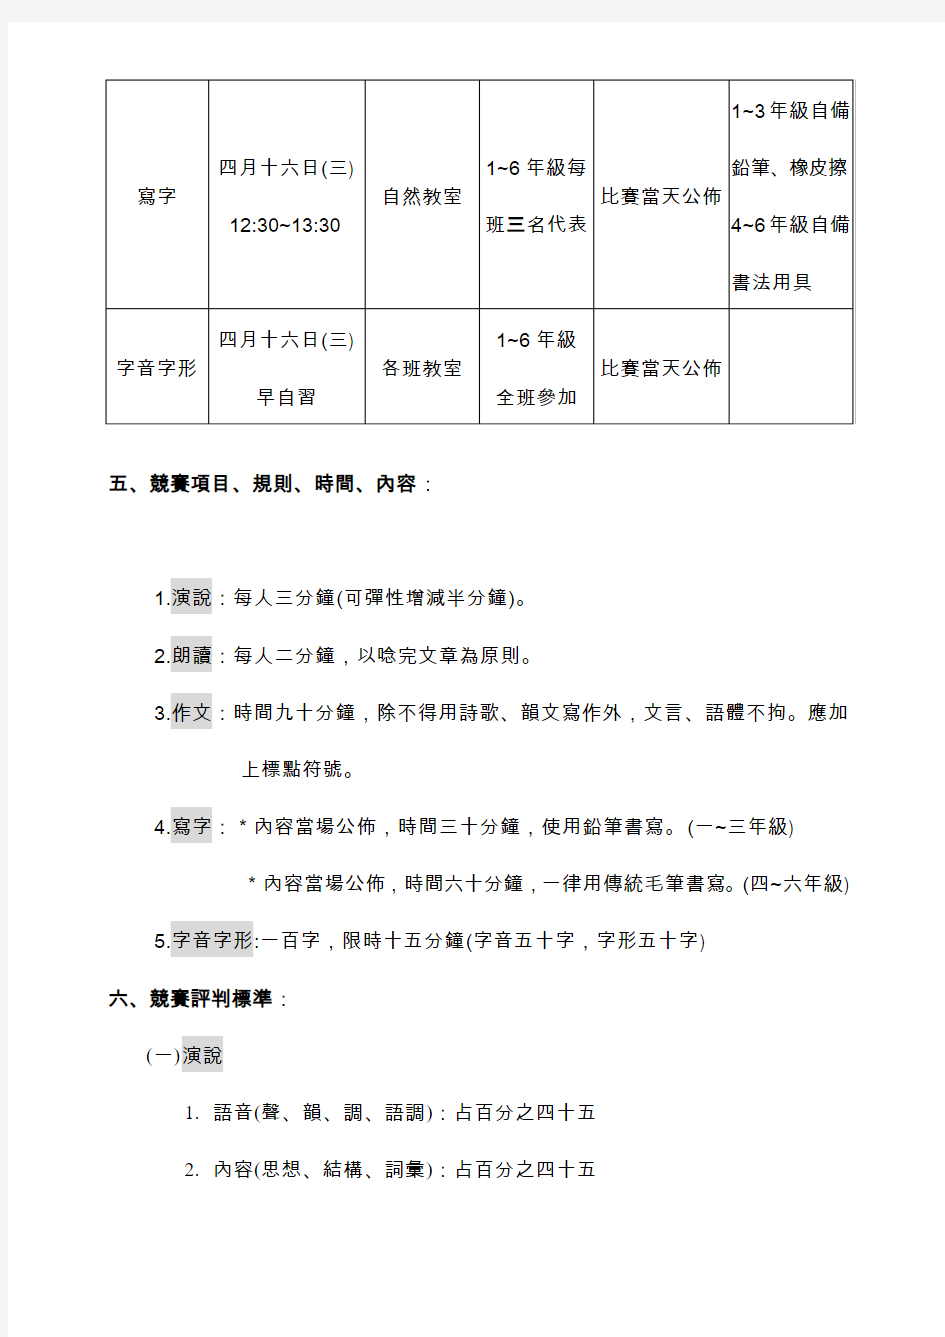 台东县岩湾国民小学九十六学年度第二学期学艺竞赛办法